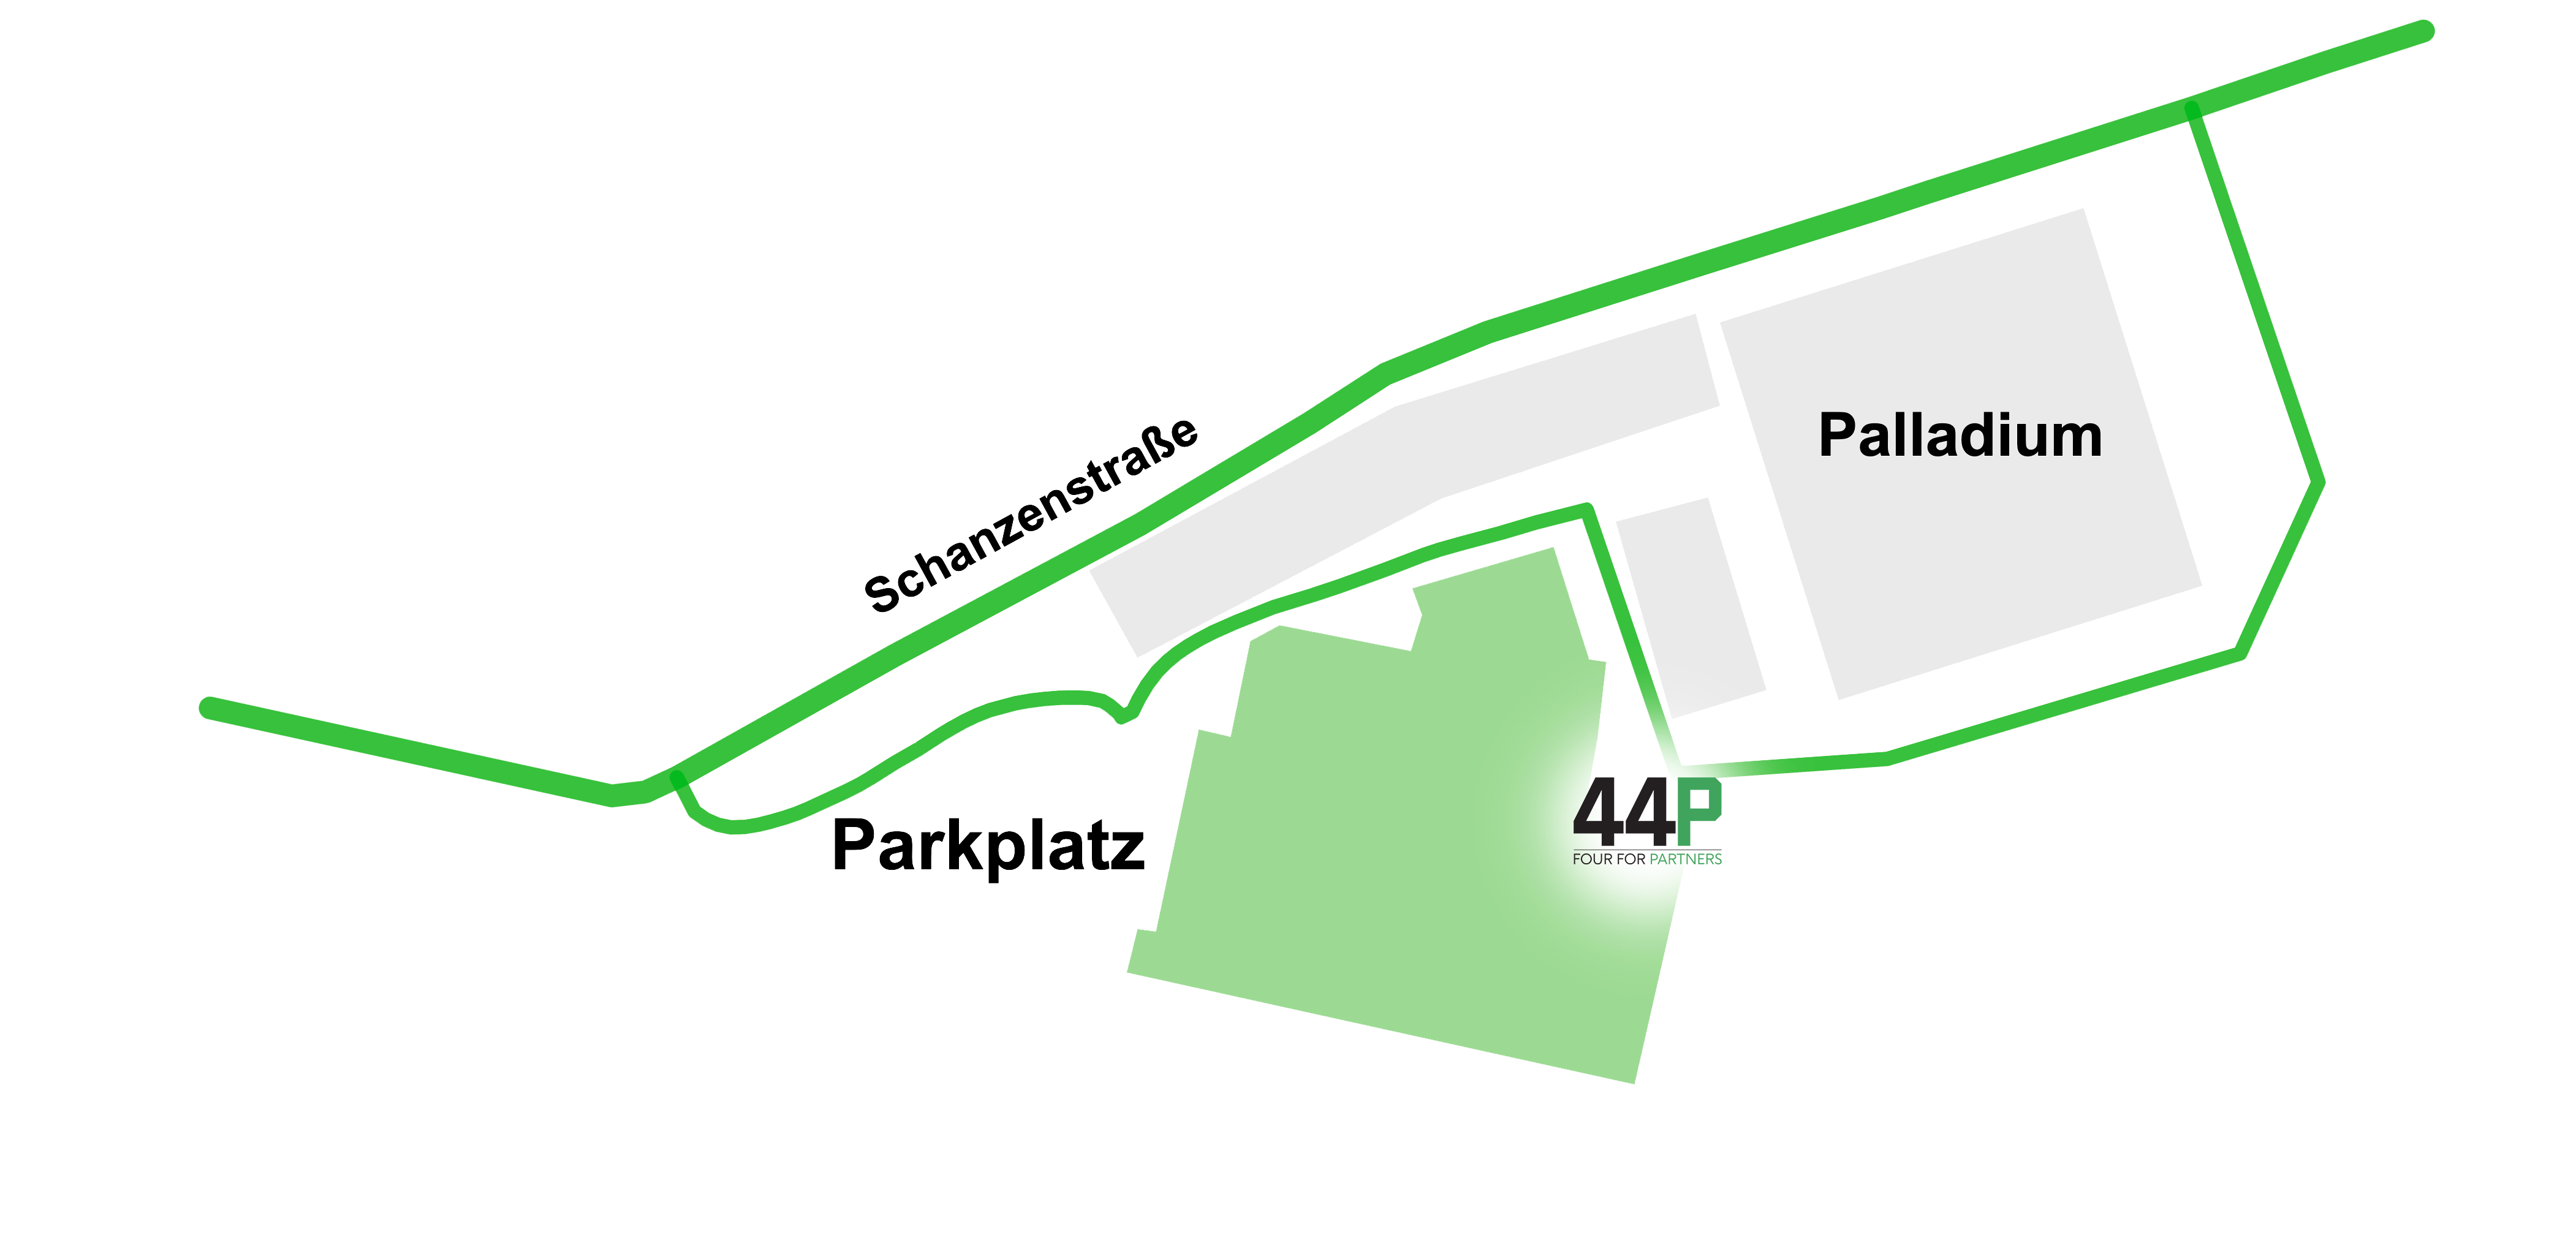 Anfahrtsskizze zu 44p GmbH